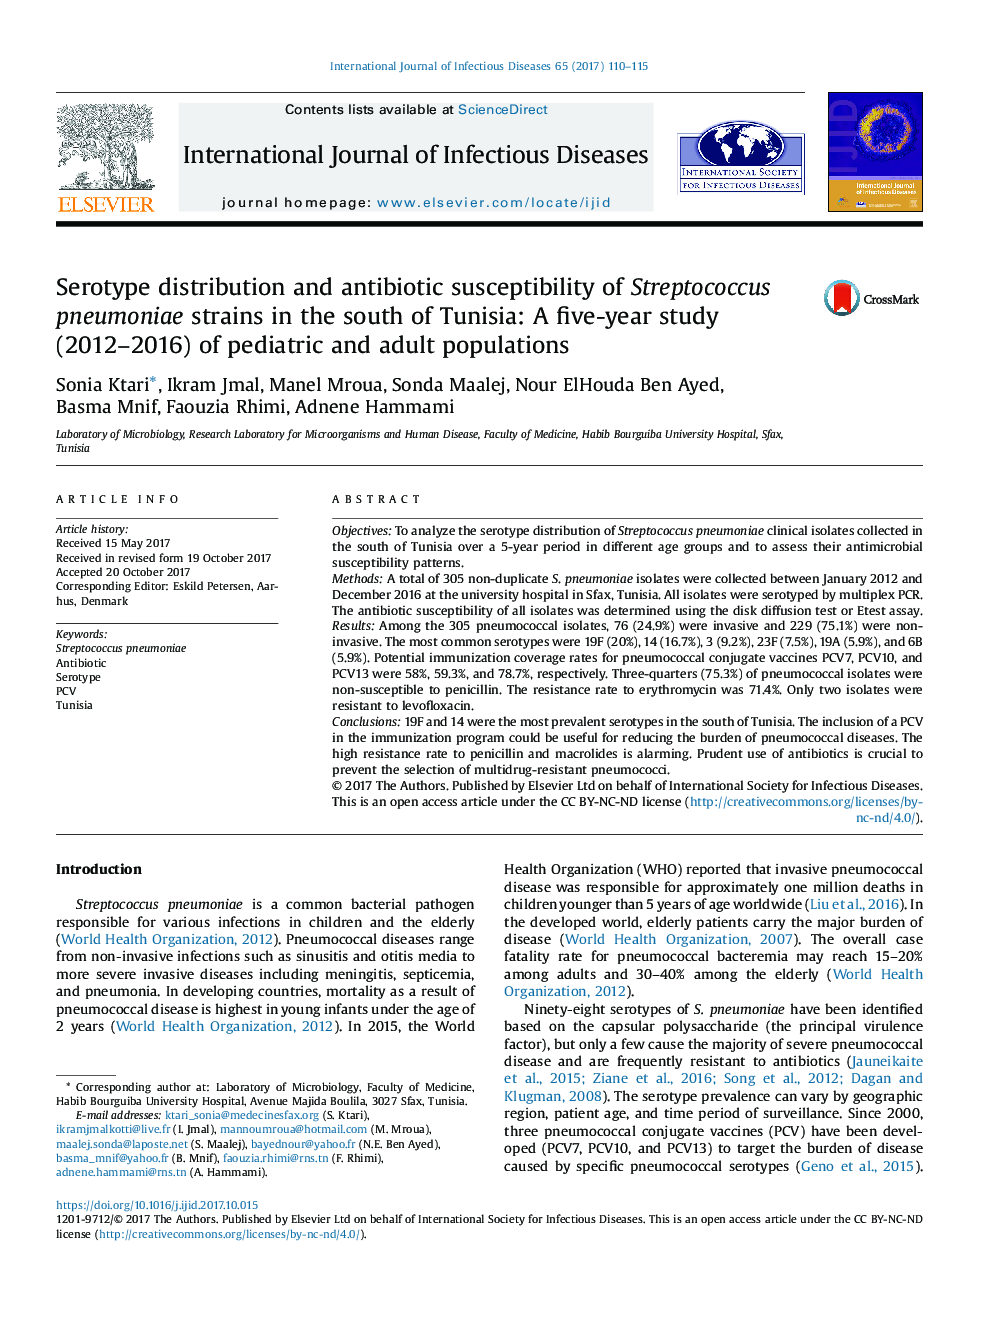 توزیع سروتیپ و حساسیت آنتی بیوتیک به سوپ استرپتوکوک پنومونیه در جنوب تونس: مطالعه پنج ساله (2012-2016) جمعیت کودکان و بزرگسالان 